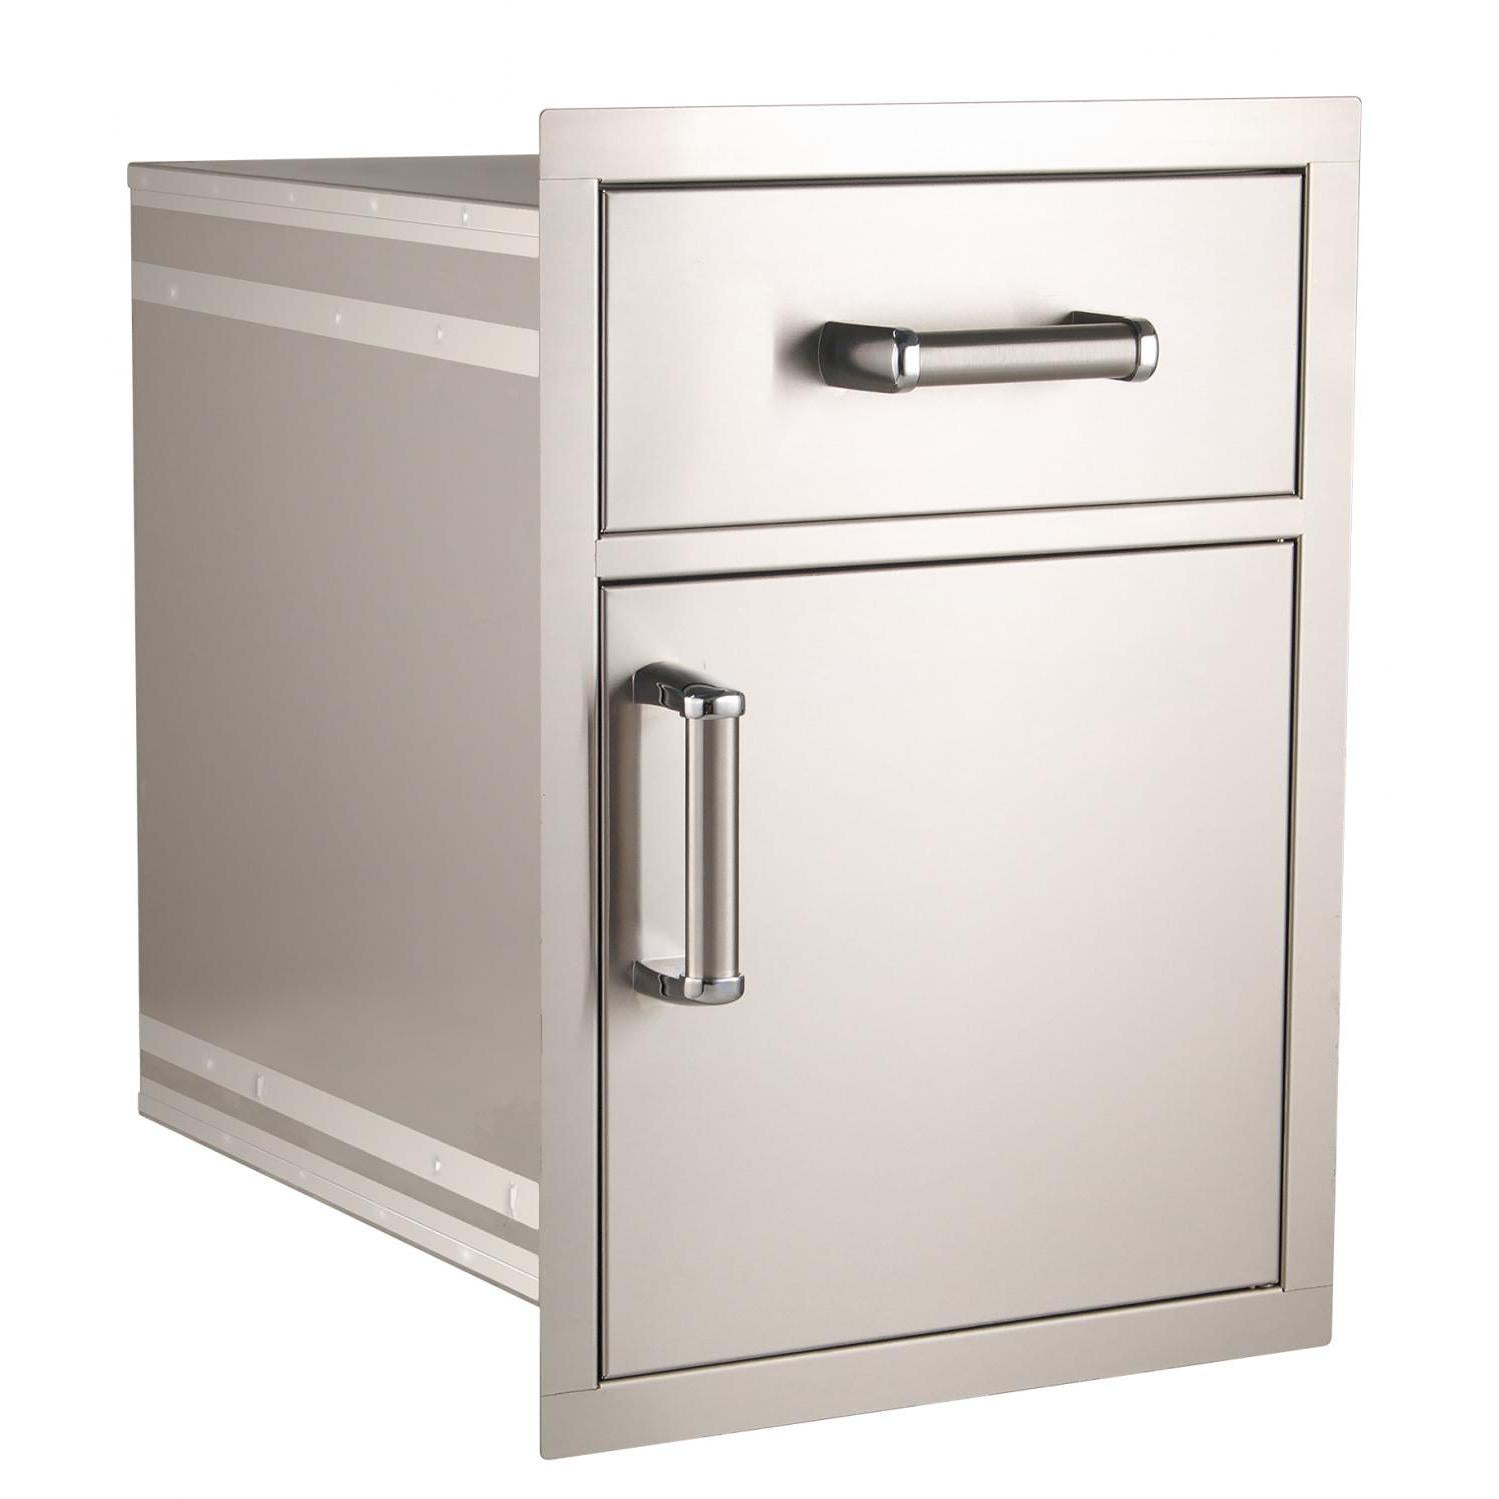 FIREMAGIC Flush Pantry Door & Drawer Combo (54020S OR 54018S)